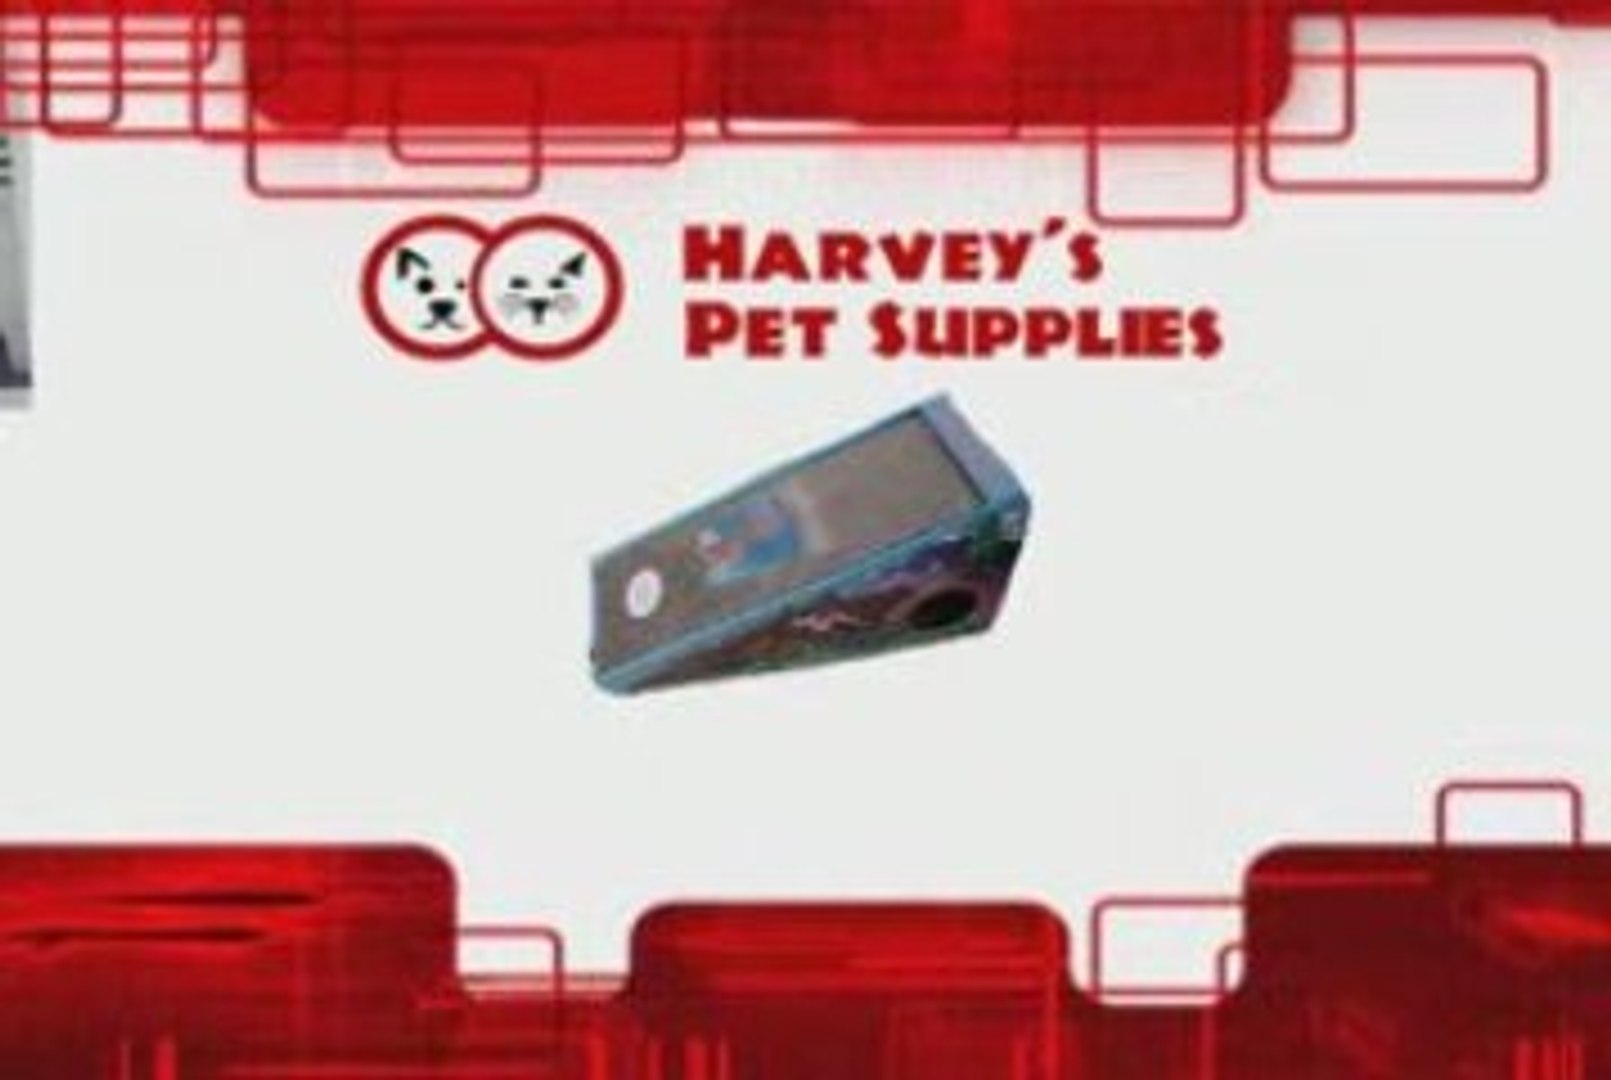 Harvey Pet Supplies - Treat your Favorite Pet!